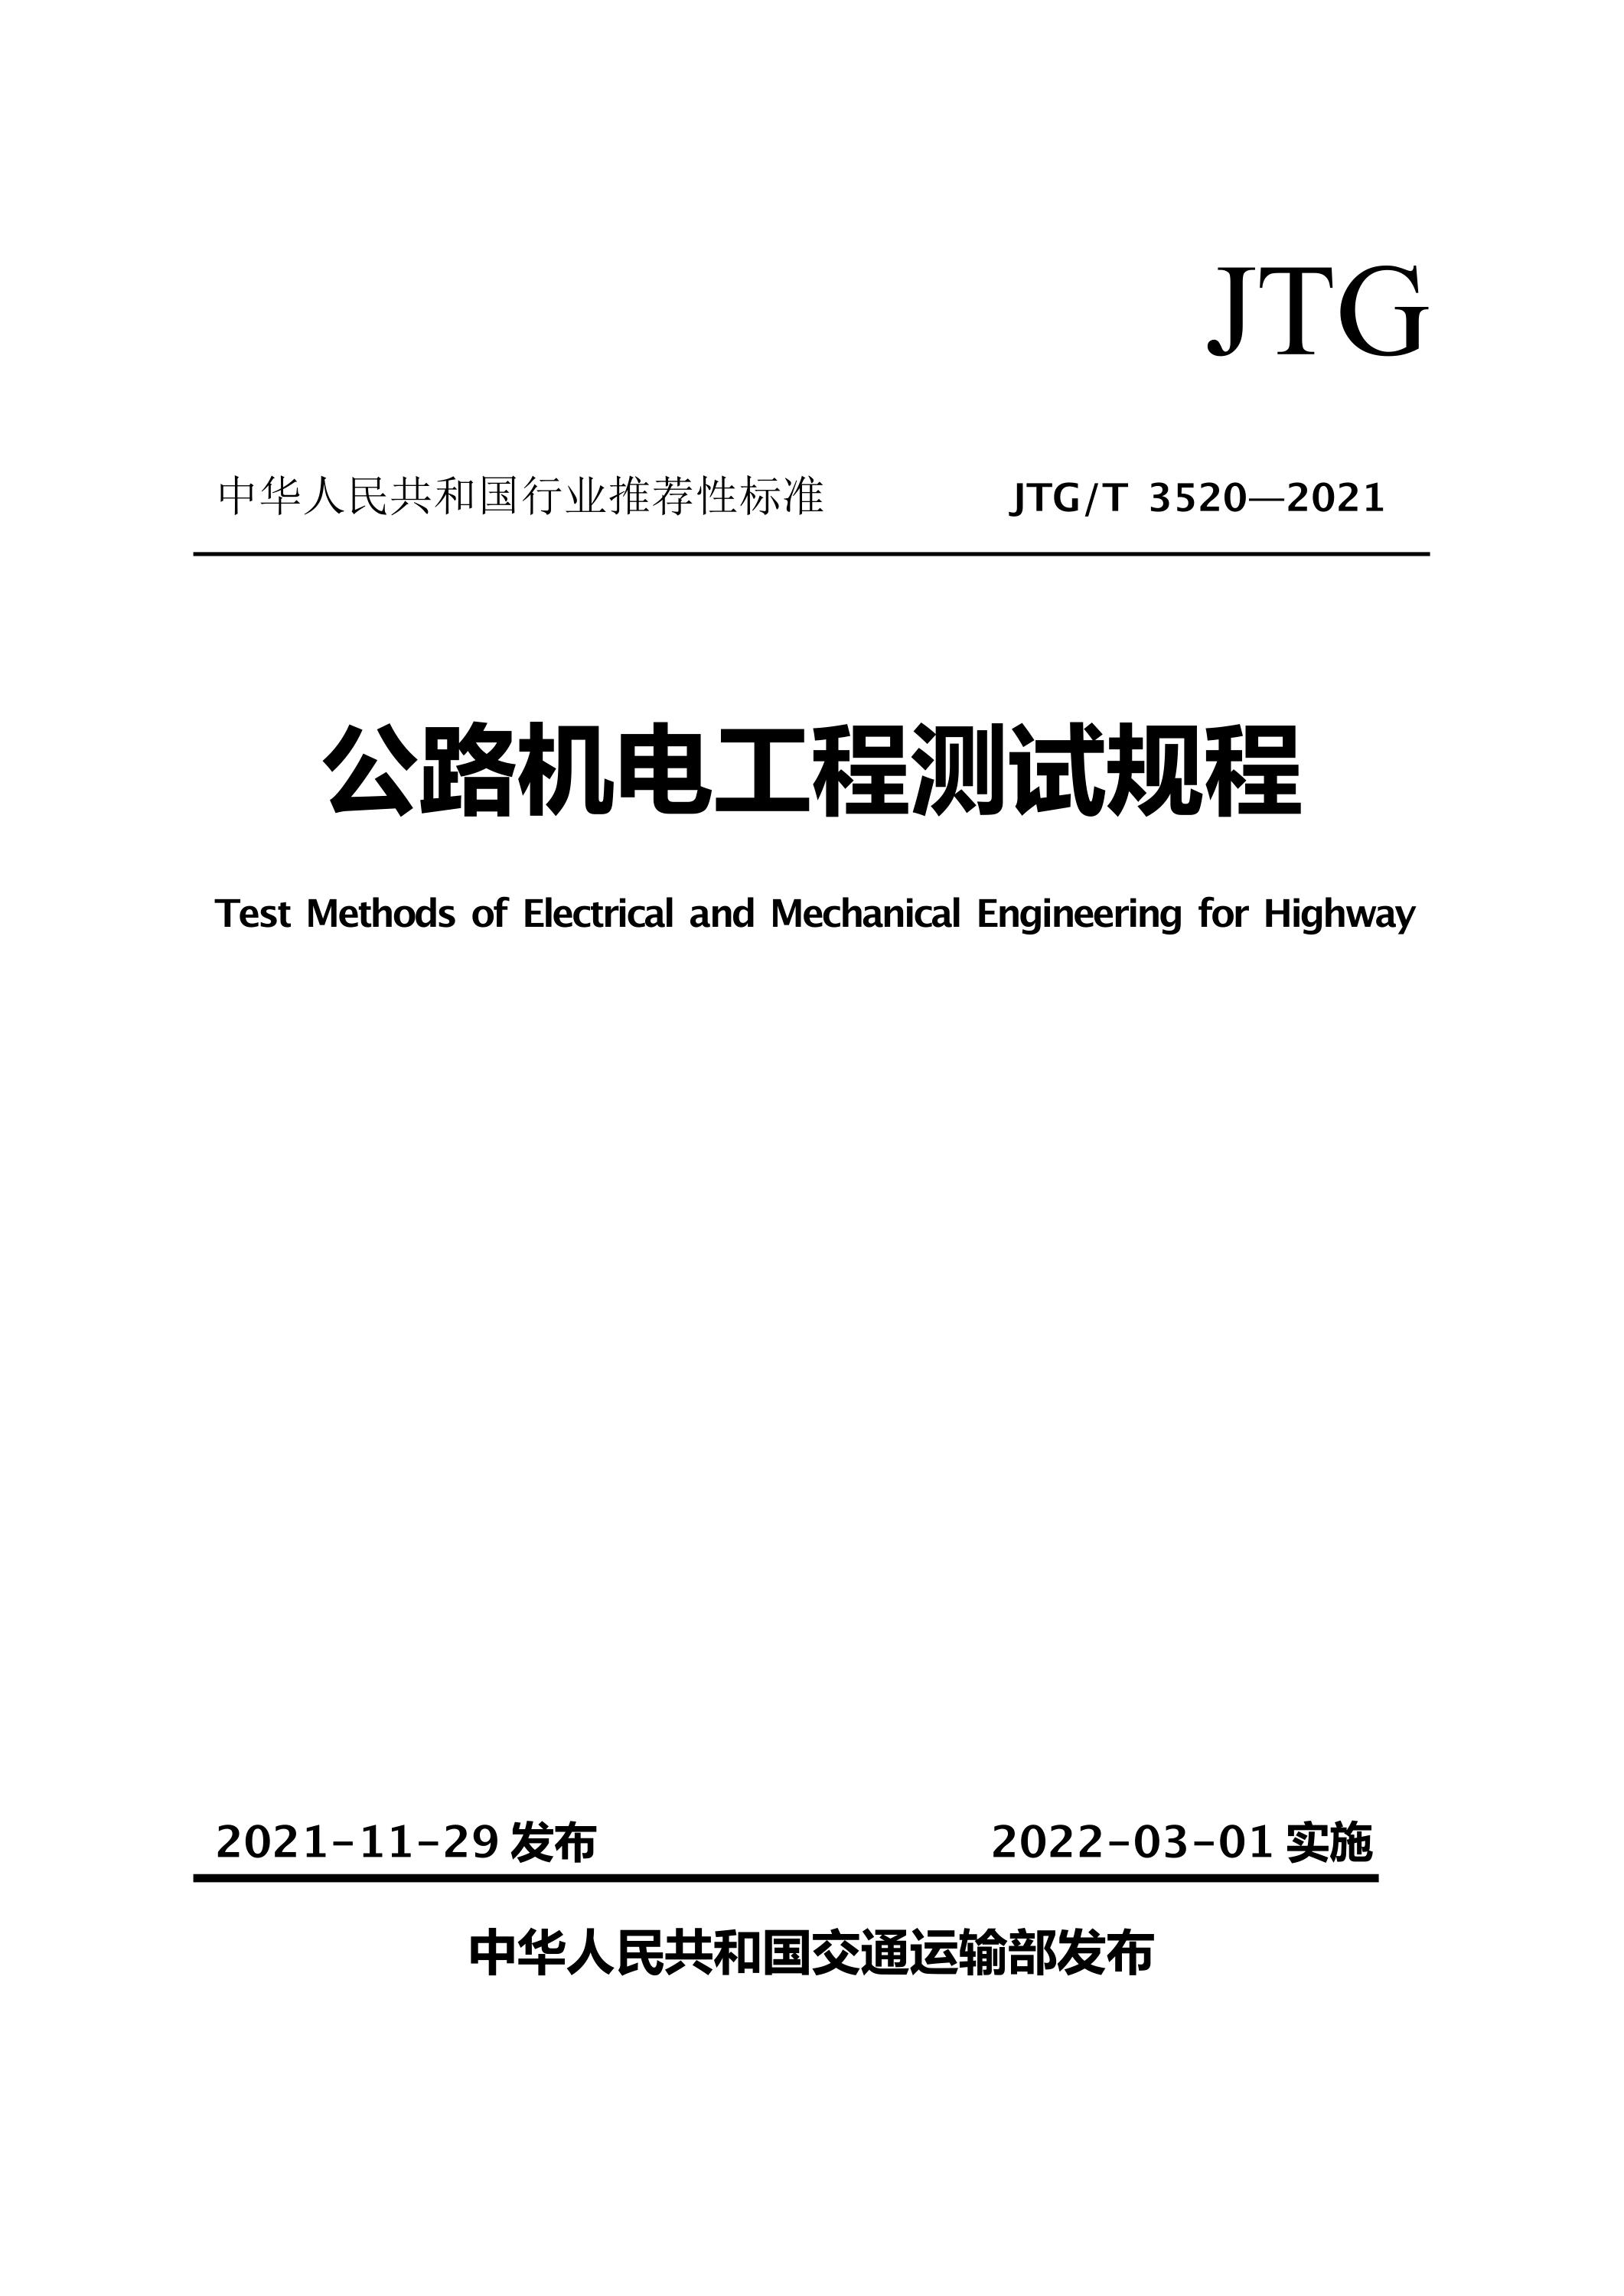 JTG∕T 3520-2021 公路机电工程测试规程资源截图